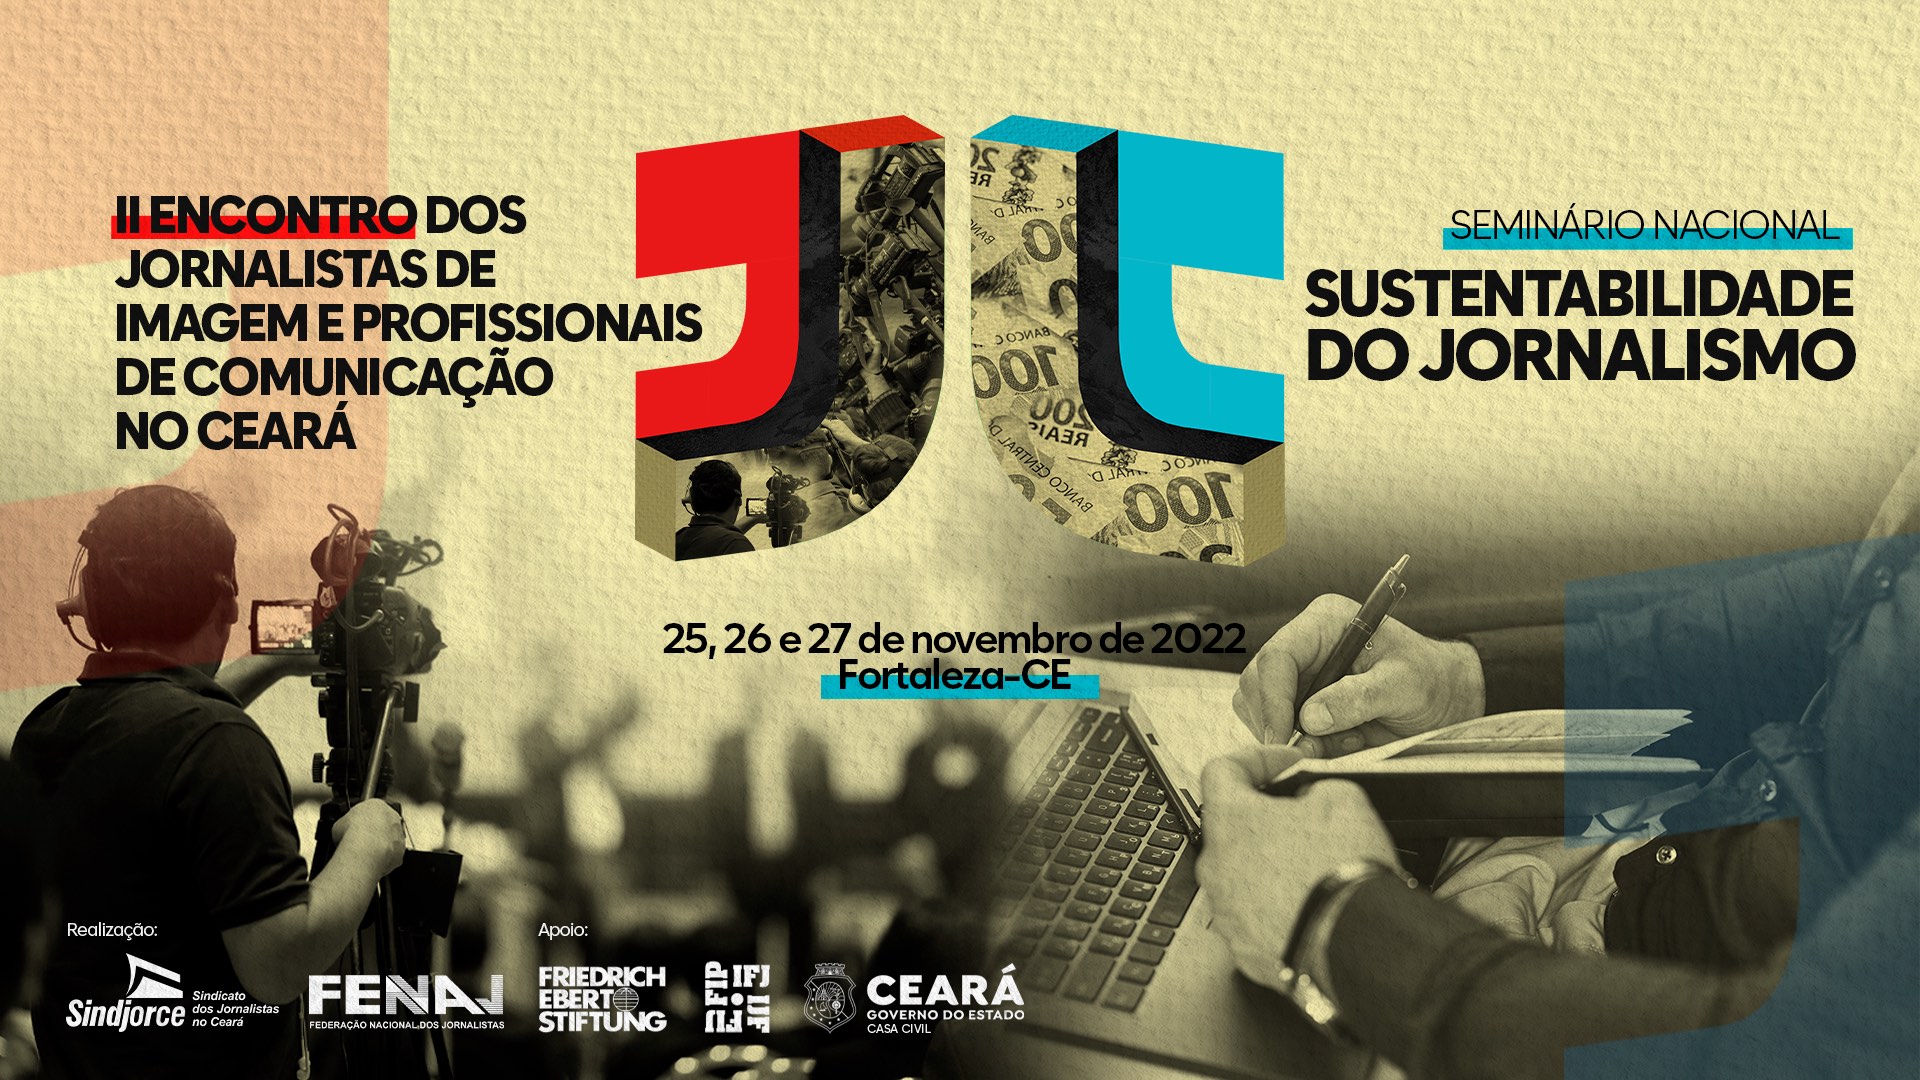 Brasil: se realizará el II Encuentro Estatal de Periodistas de Imagen y Profesionales de la Comunicación de Ceará